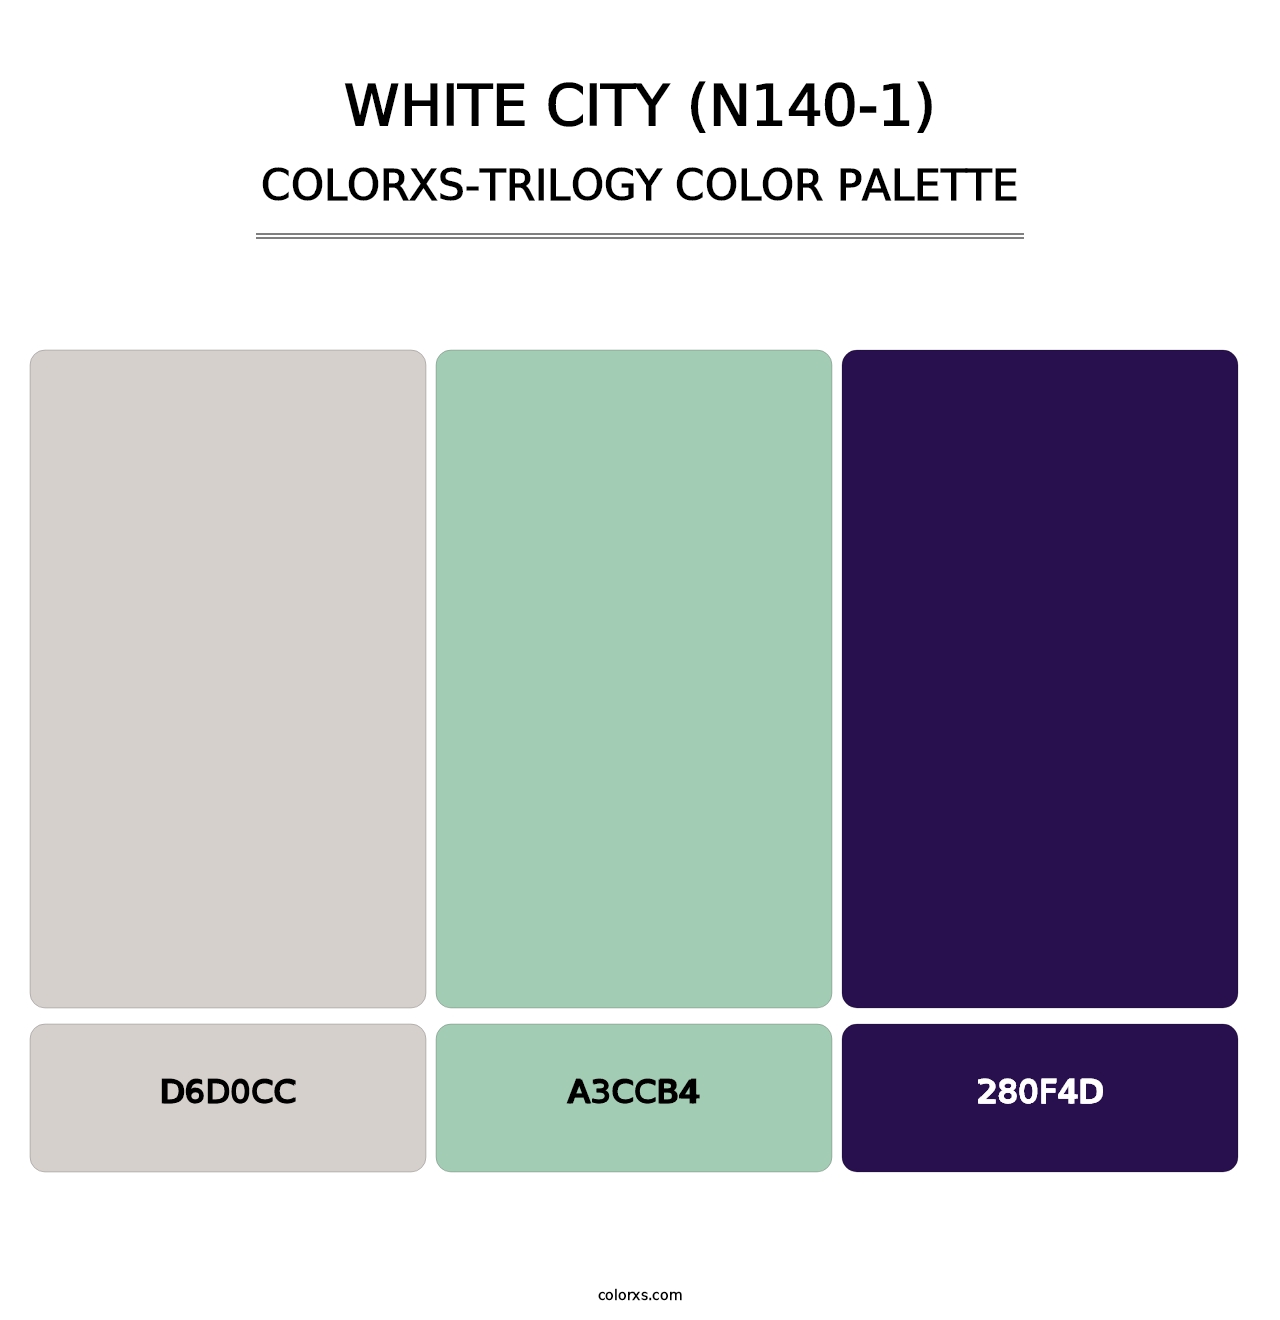 White City (N140-1) - Colorxs Trilogy Palette